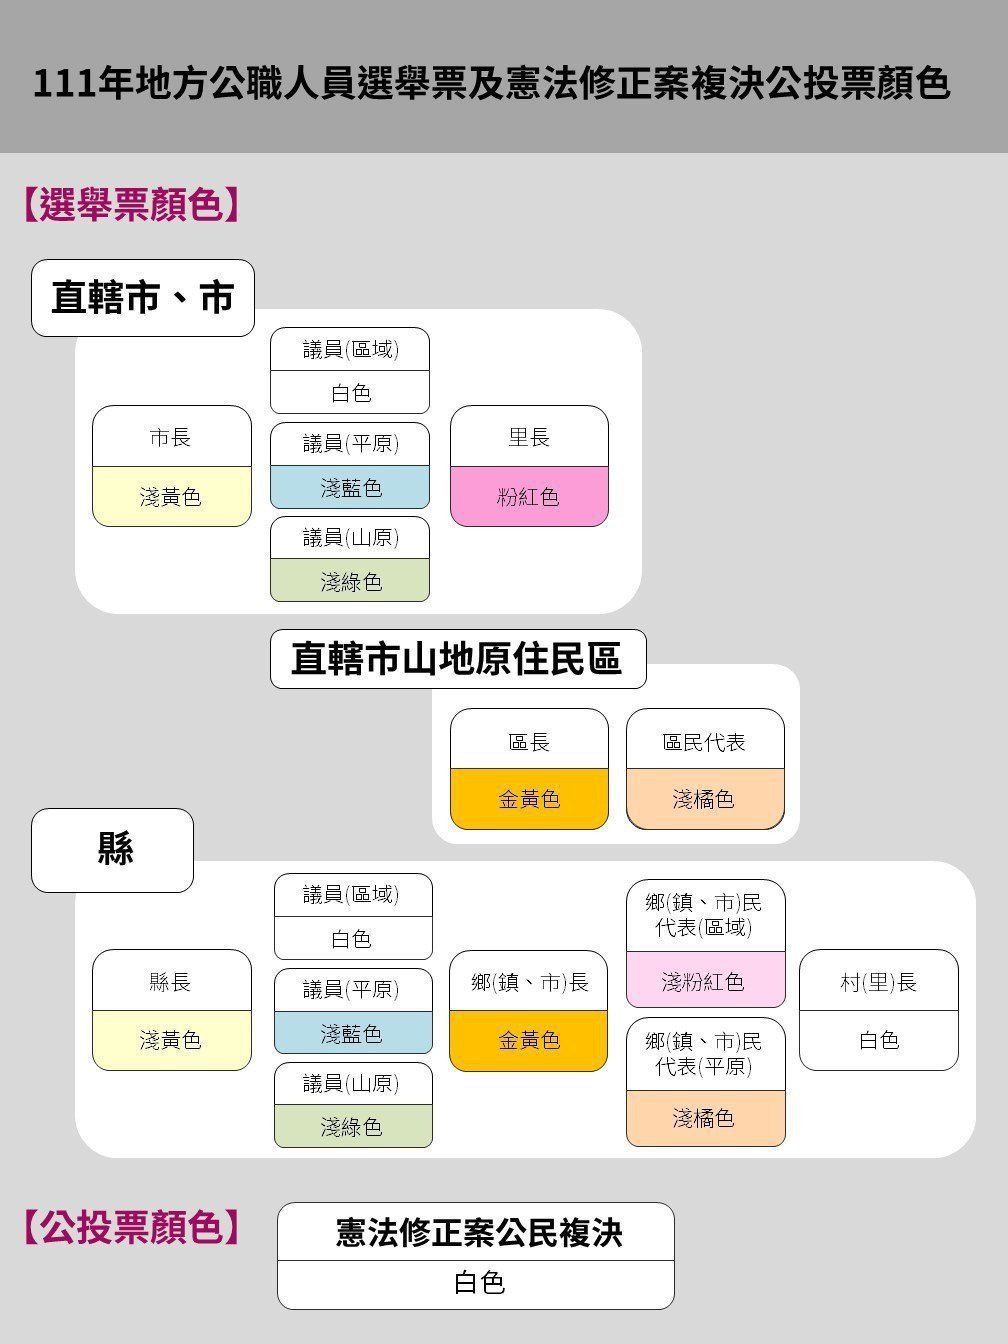 圖／翻攝自「中央選舉委員會」官網